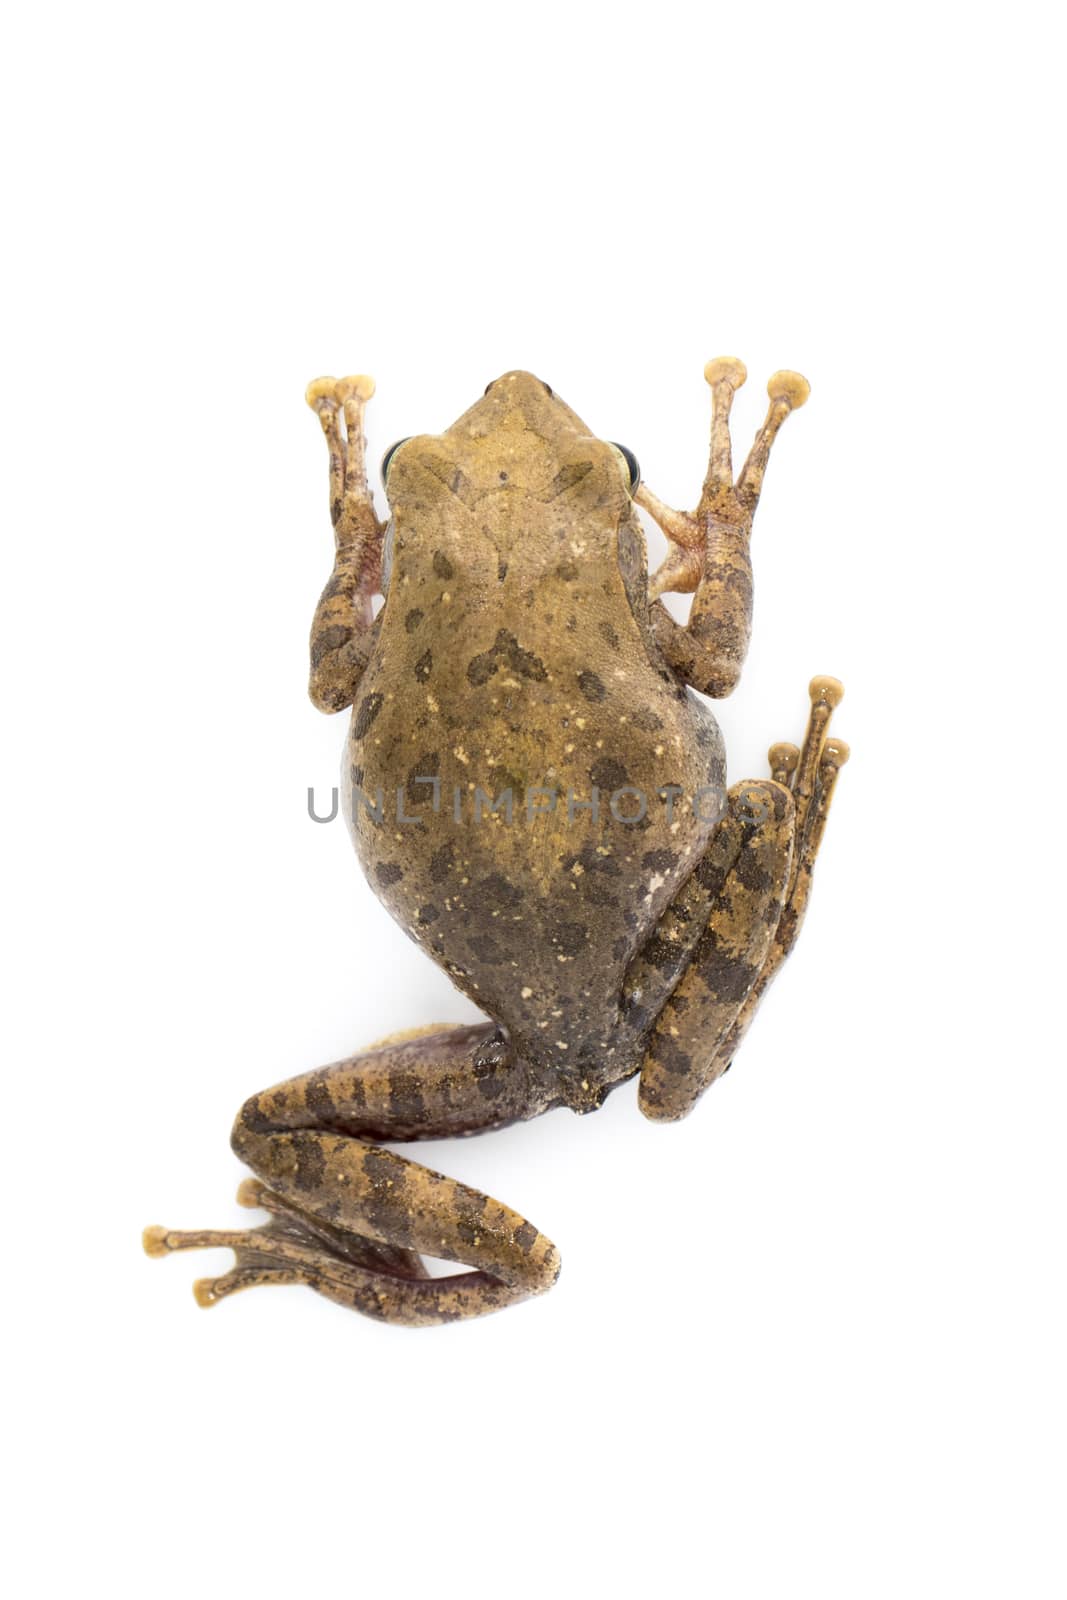 Image of Frog, Polypedates leucomystax,polypedates maculatus on a white background.  Amphibian. Animal.